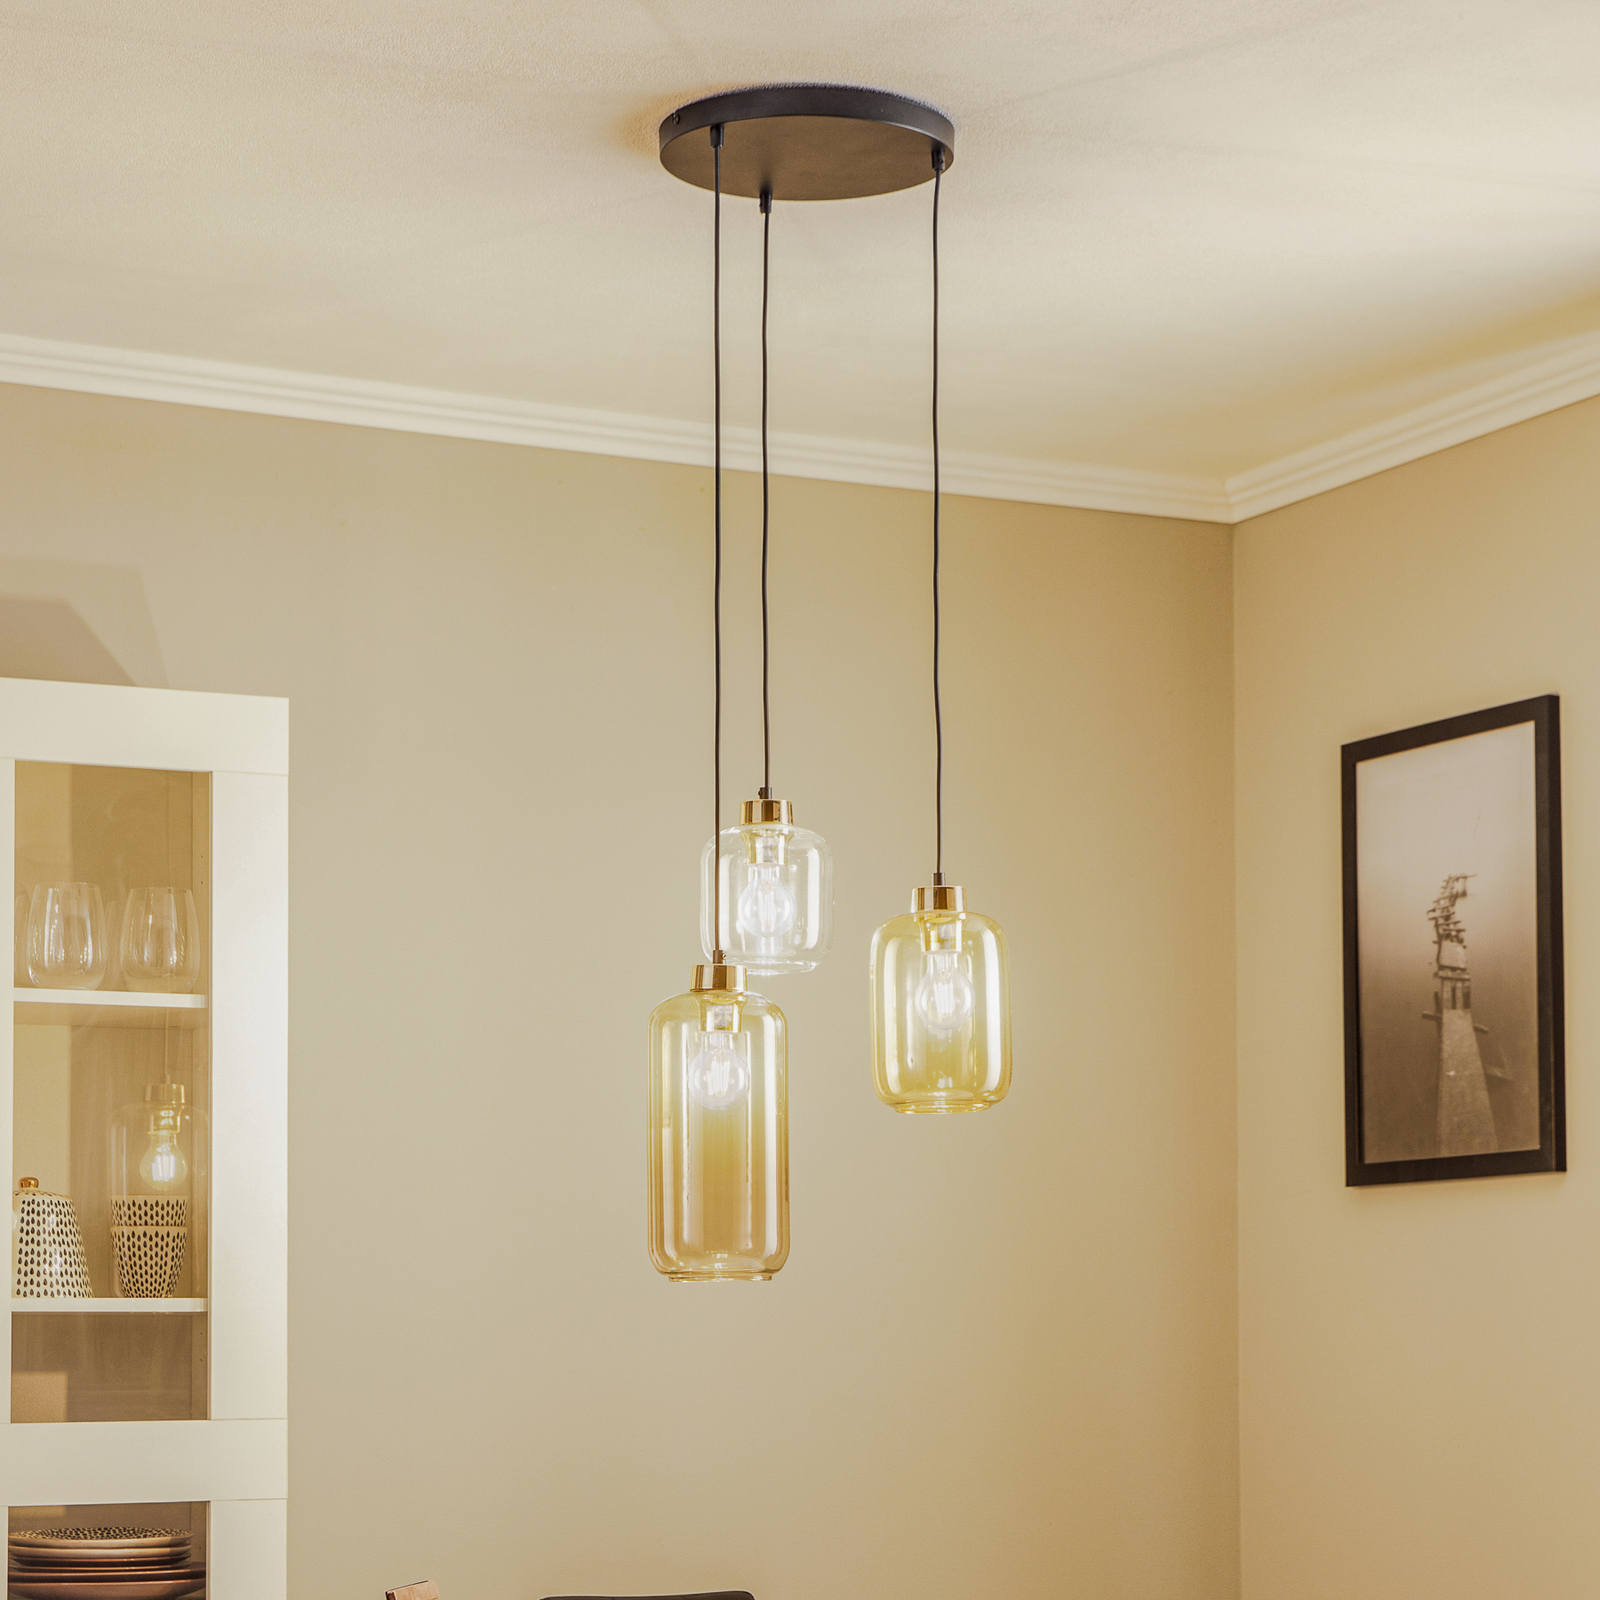 Marco Brown hanglamp, 3-lamps, helder/bruin